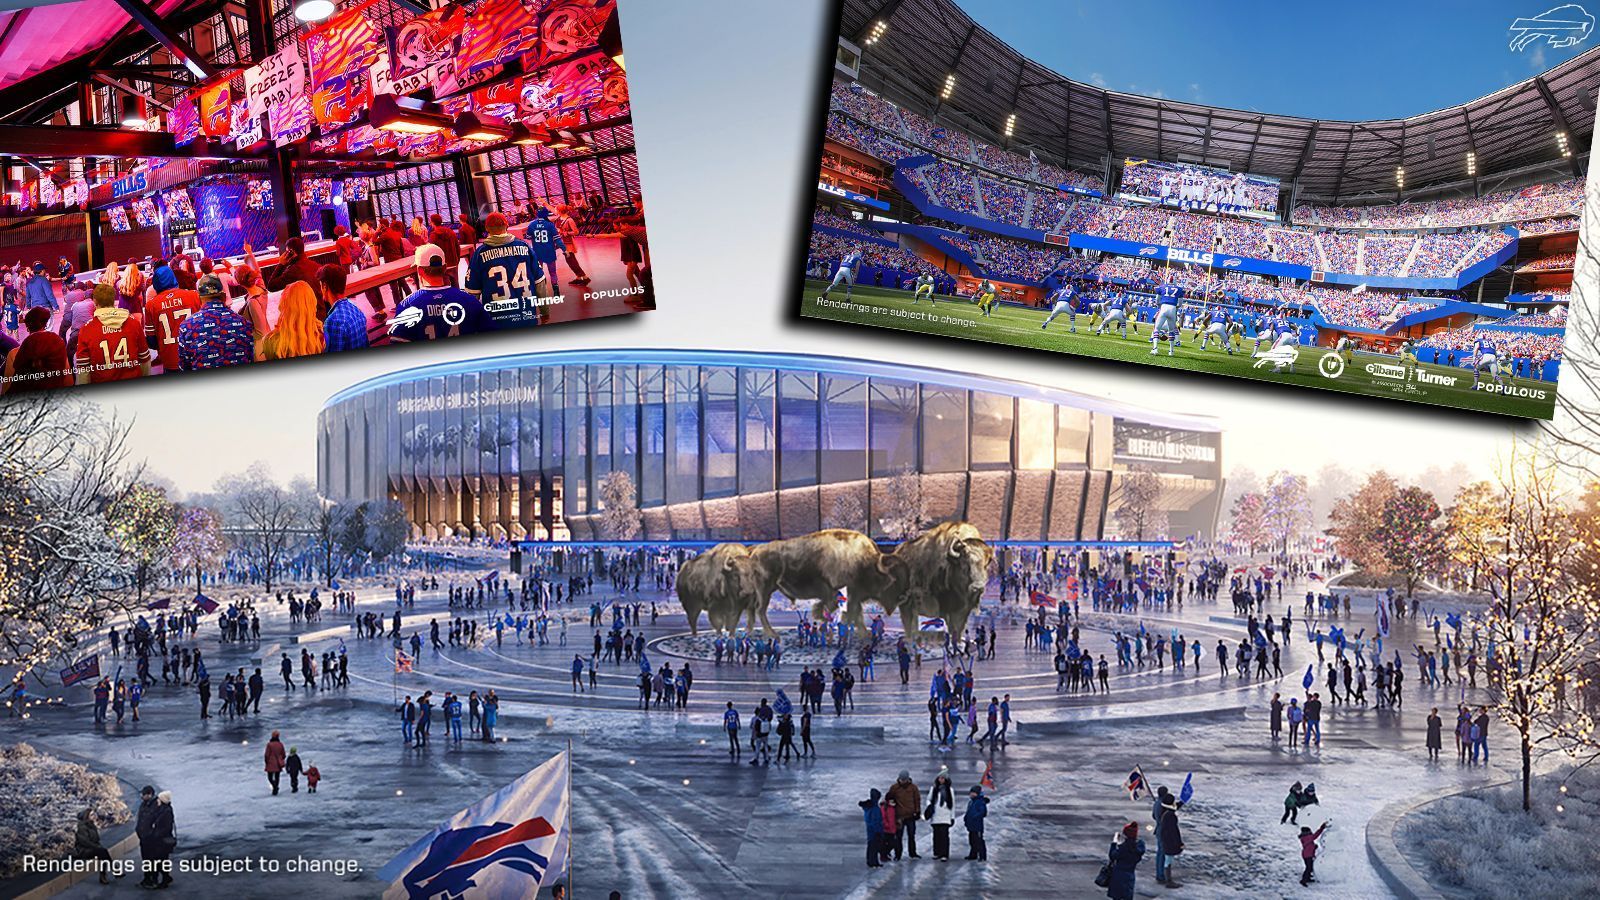 
                <strong>Neues Bills-Stadion: Ein modernes Hightech-Projekt</strong><br>
                Die Buffalo Bills bauen ein neues Stadion. Das Großprojekt soll 2026 fertiggestellt werden. Die Franchise veröffentlichte dazu neue "Konzept-Arts", die die verschiedenen Bereiche der Mega-Arena zeigen.
              